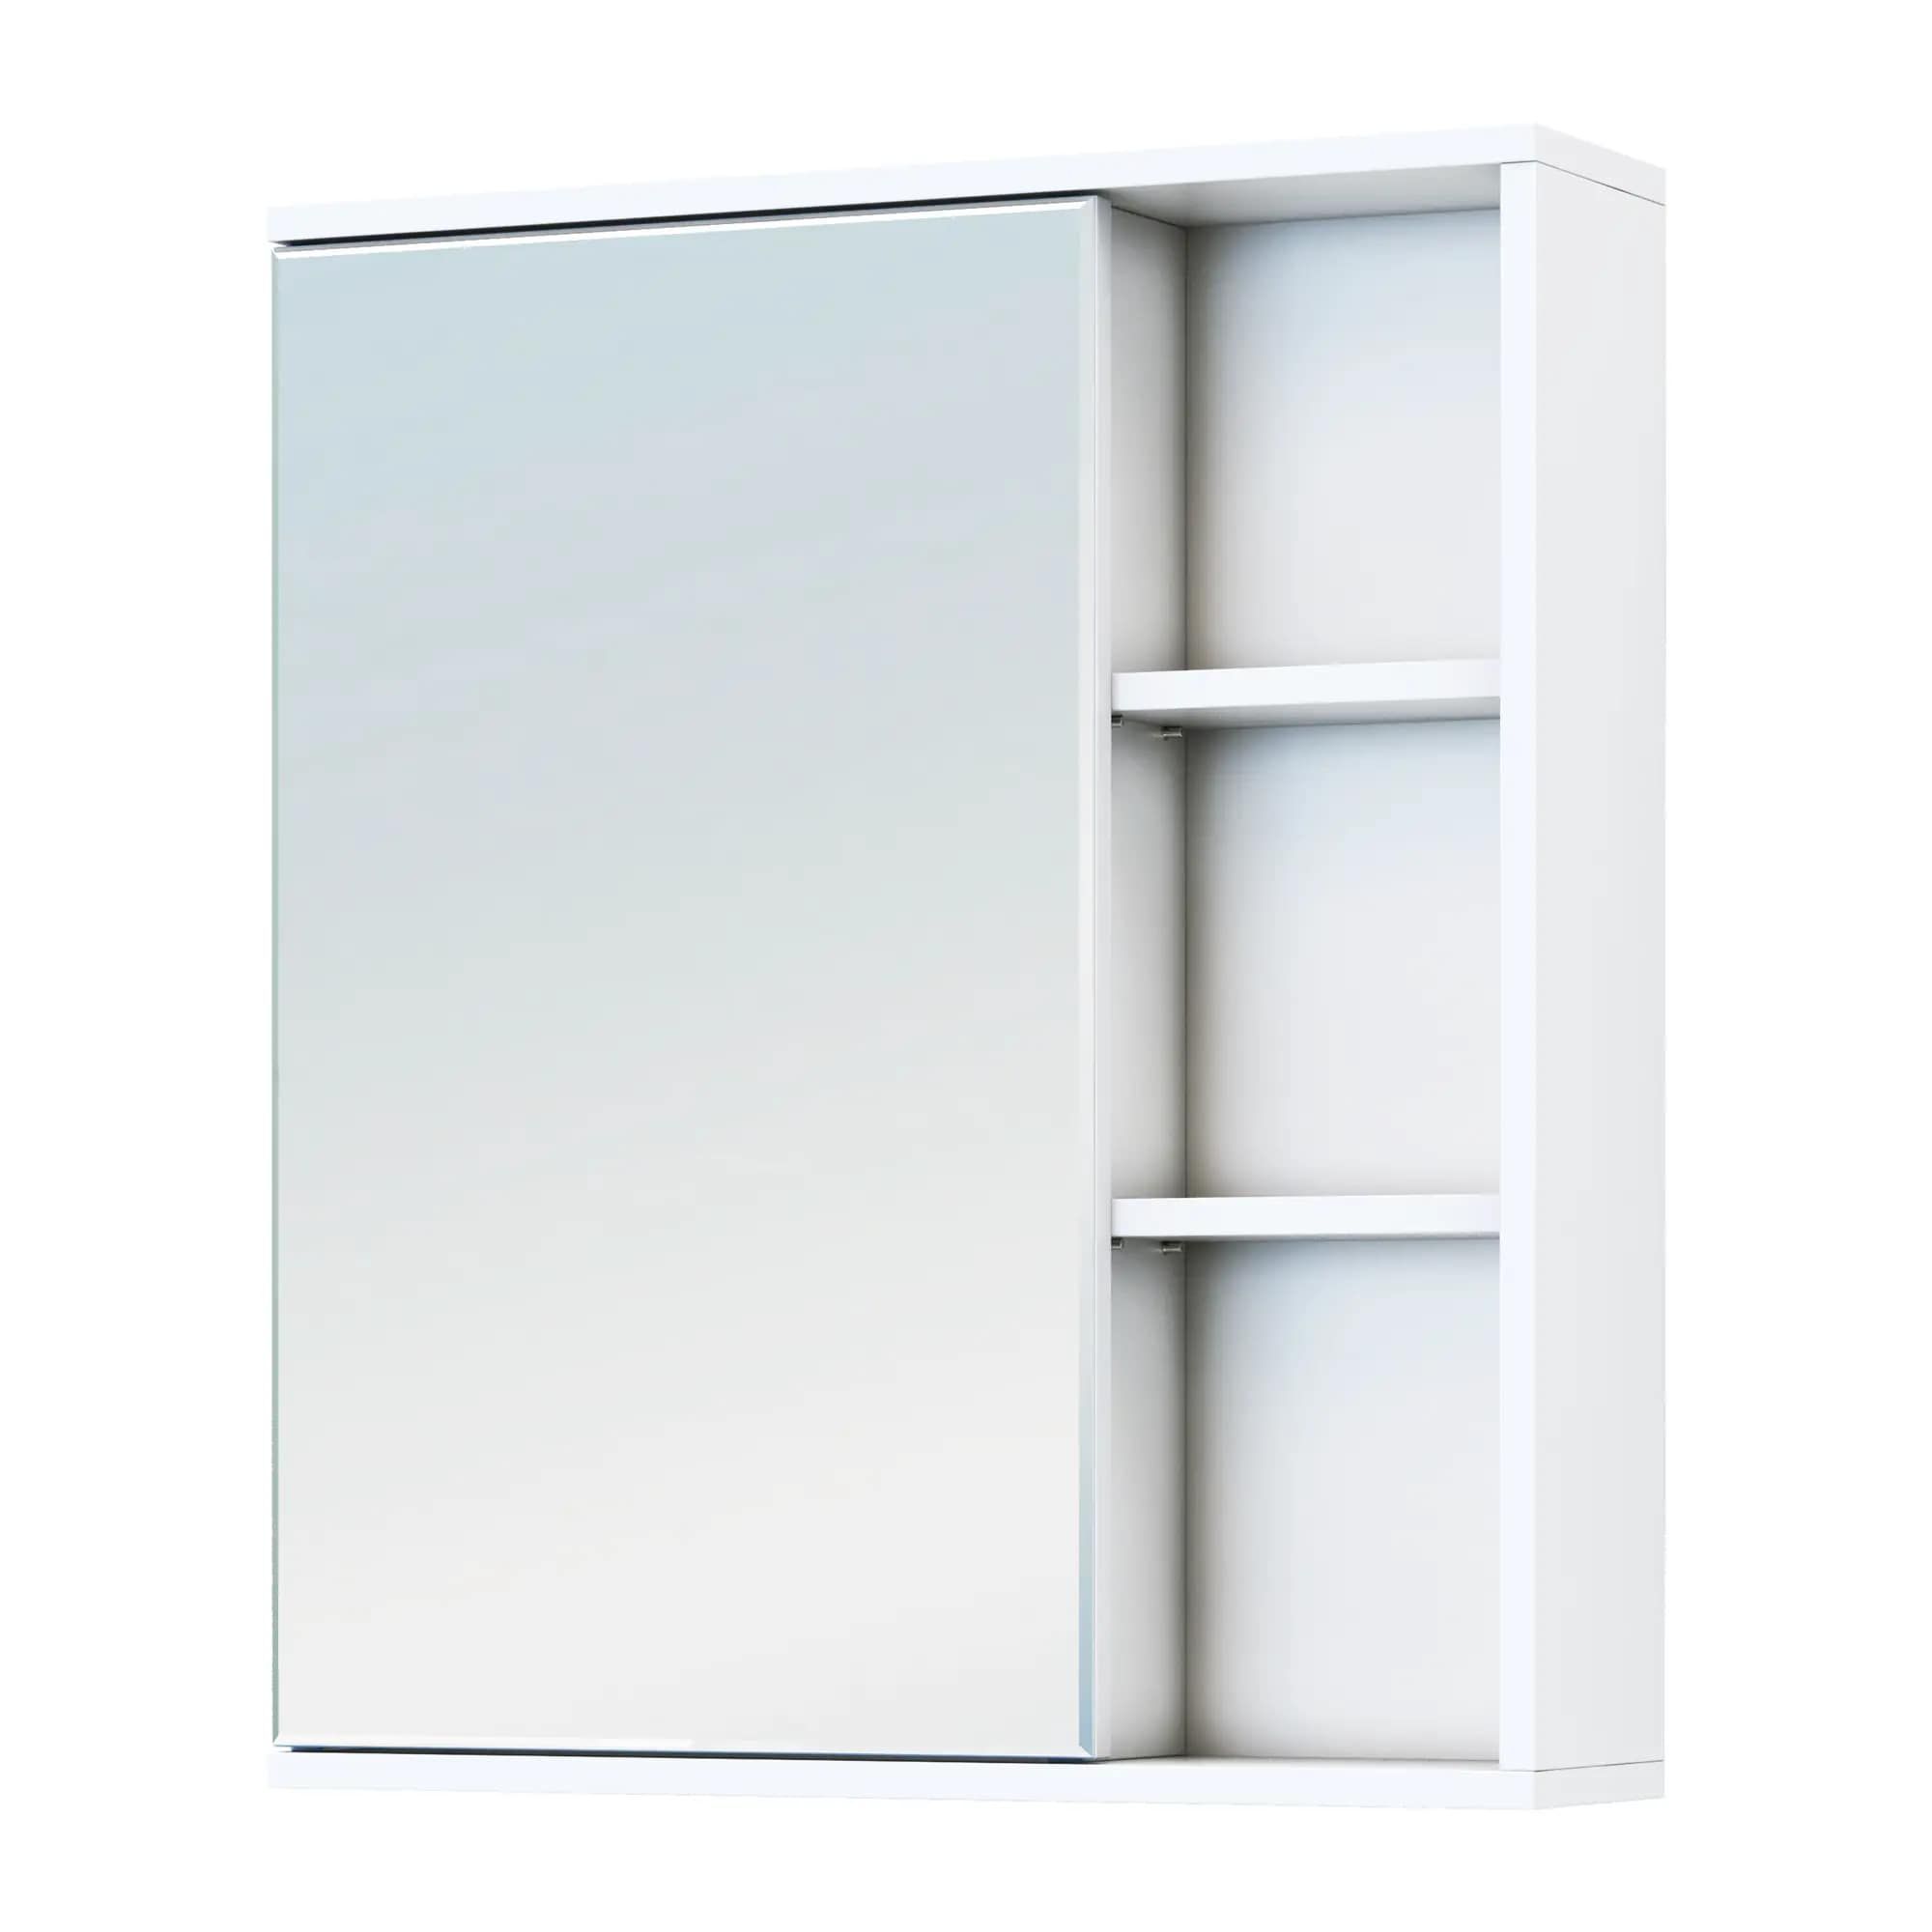 Зеркальный шкаф Vigo Matteo 15.6x60x70 см